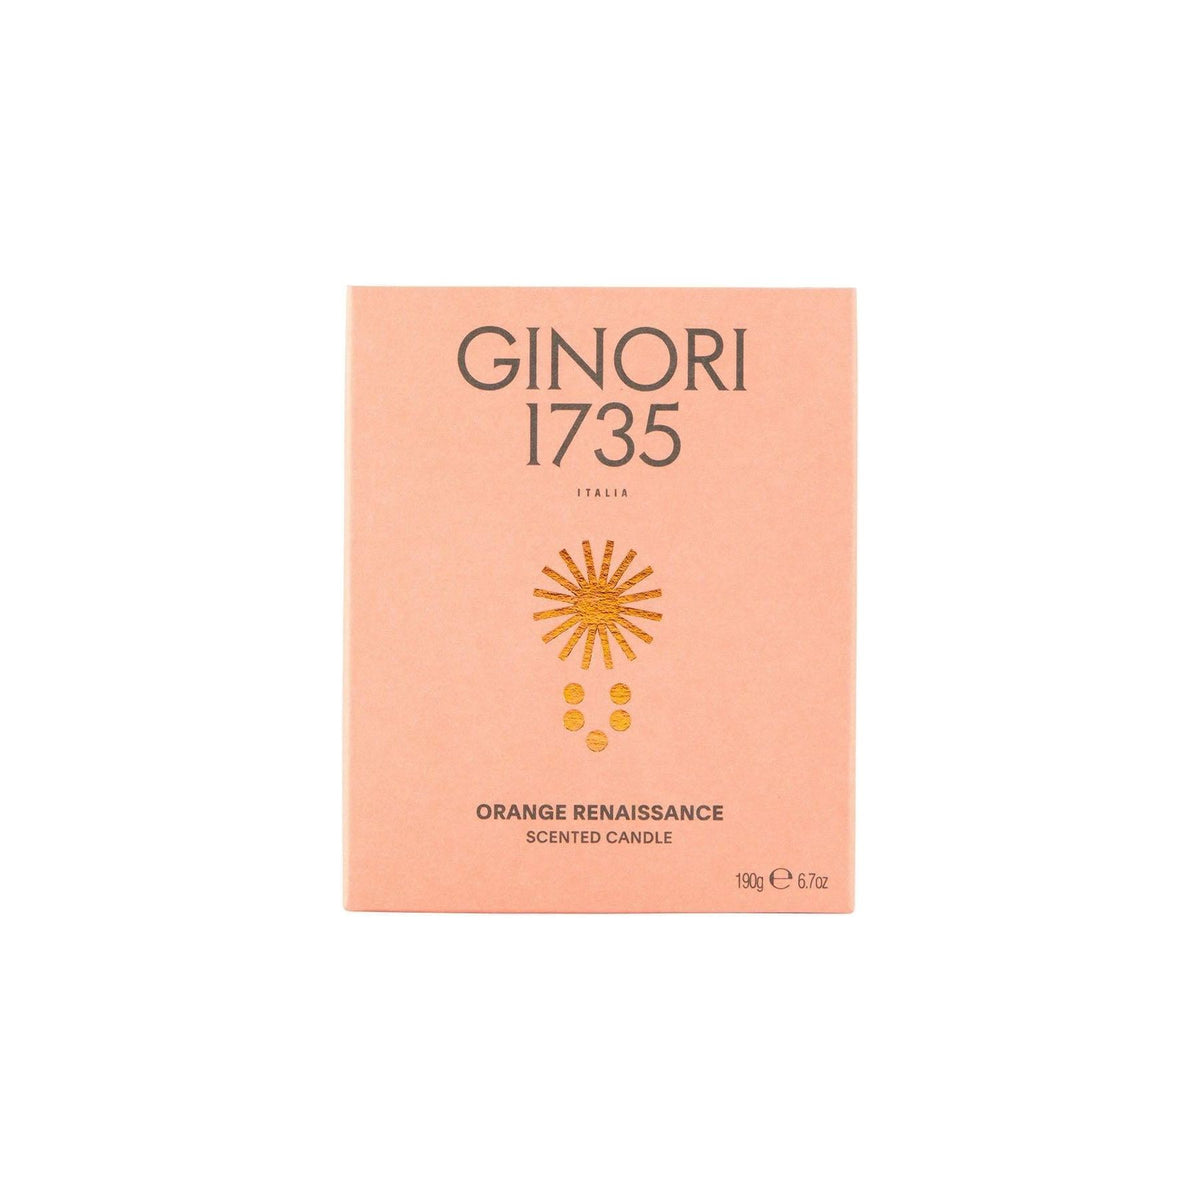 GINORI 1735 - Orange Renaissance Scented Candle Refill For Il Seguace 190 Gr - JOHN JULIA